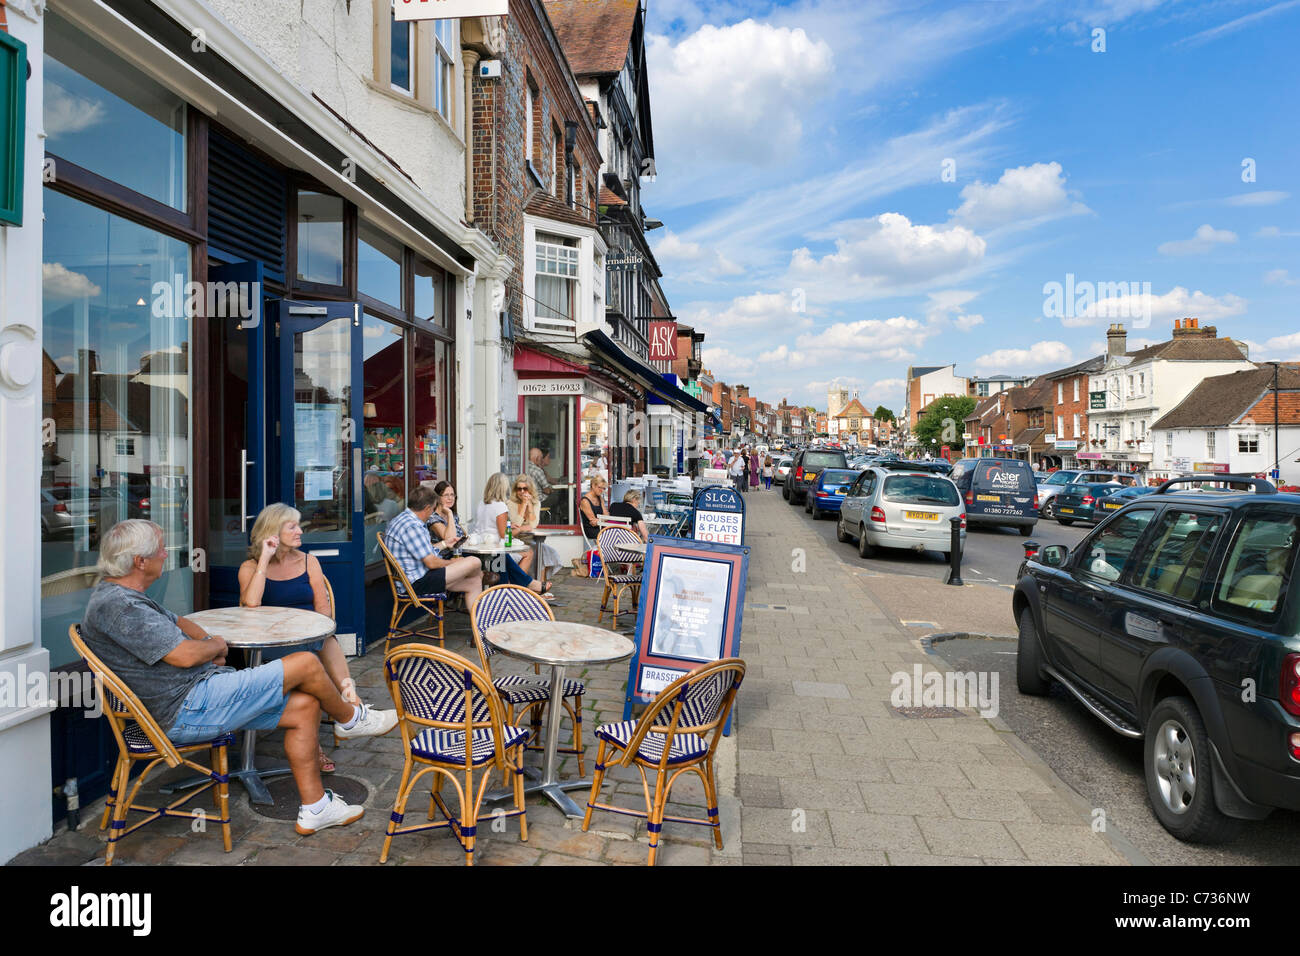 Cafe de la chaussée sur la rue dans la ville de Marlborough, Wiltshire, England, UK Banque D'Images